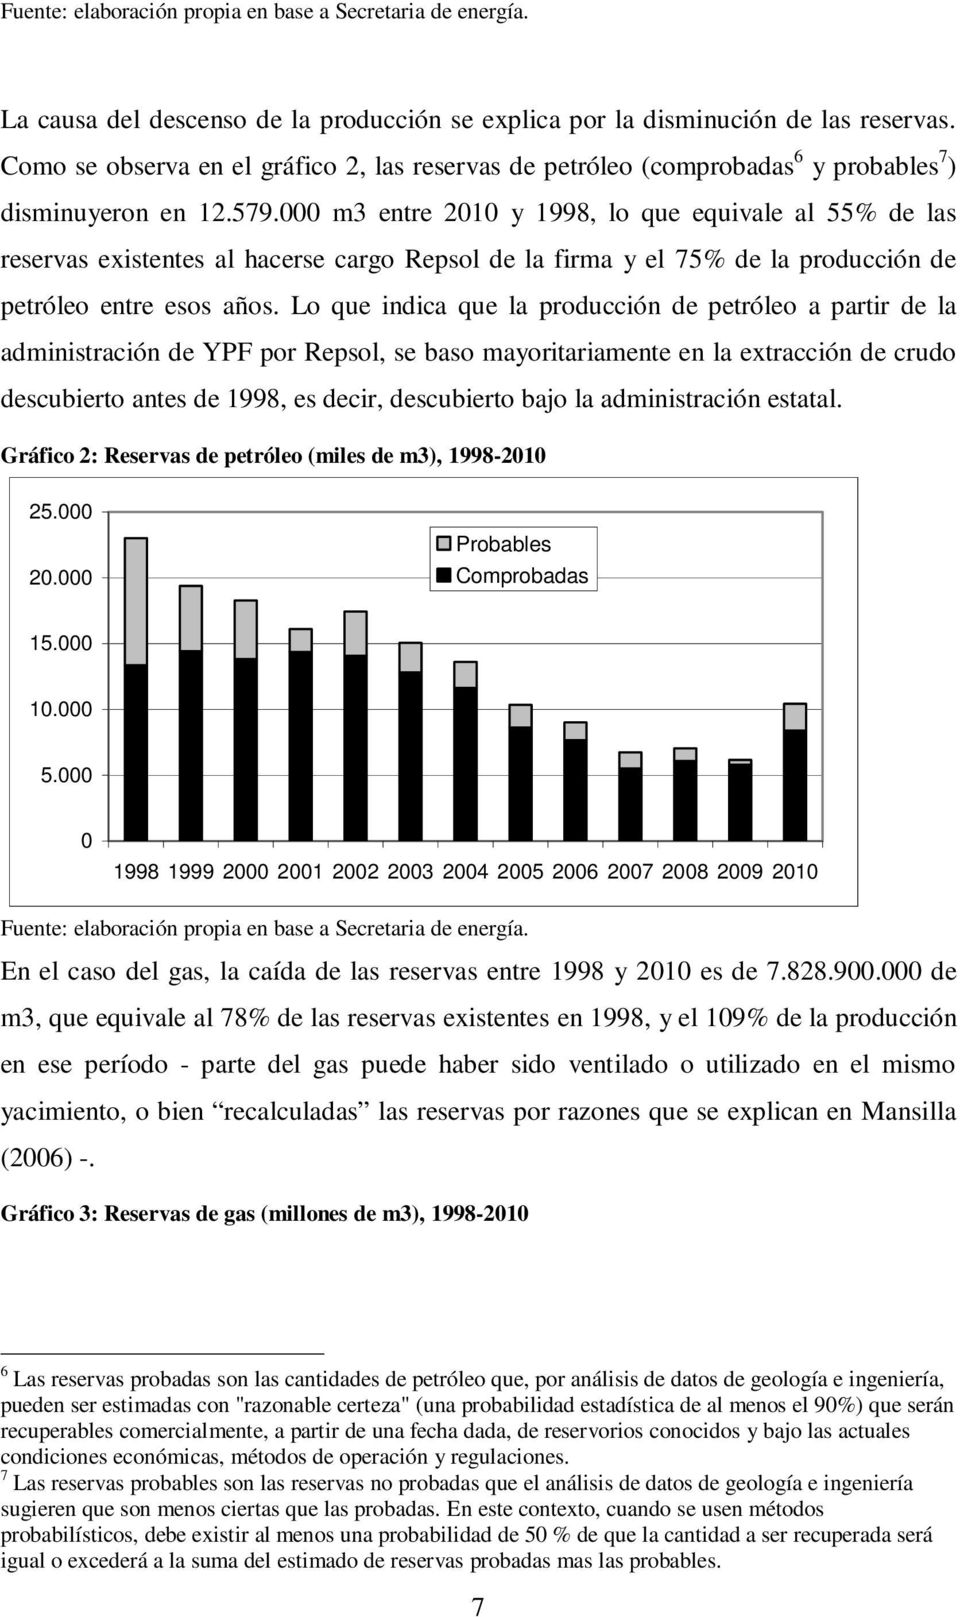 m3 entre 21 y 1998, lo que equivale al 55% de las reservas existentes al hacerse cargo Repsol de la firma y el 75% de la producción de petróleo entre esos años.